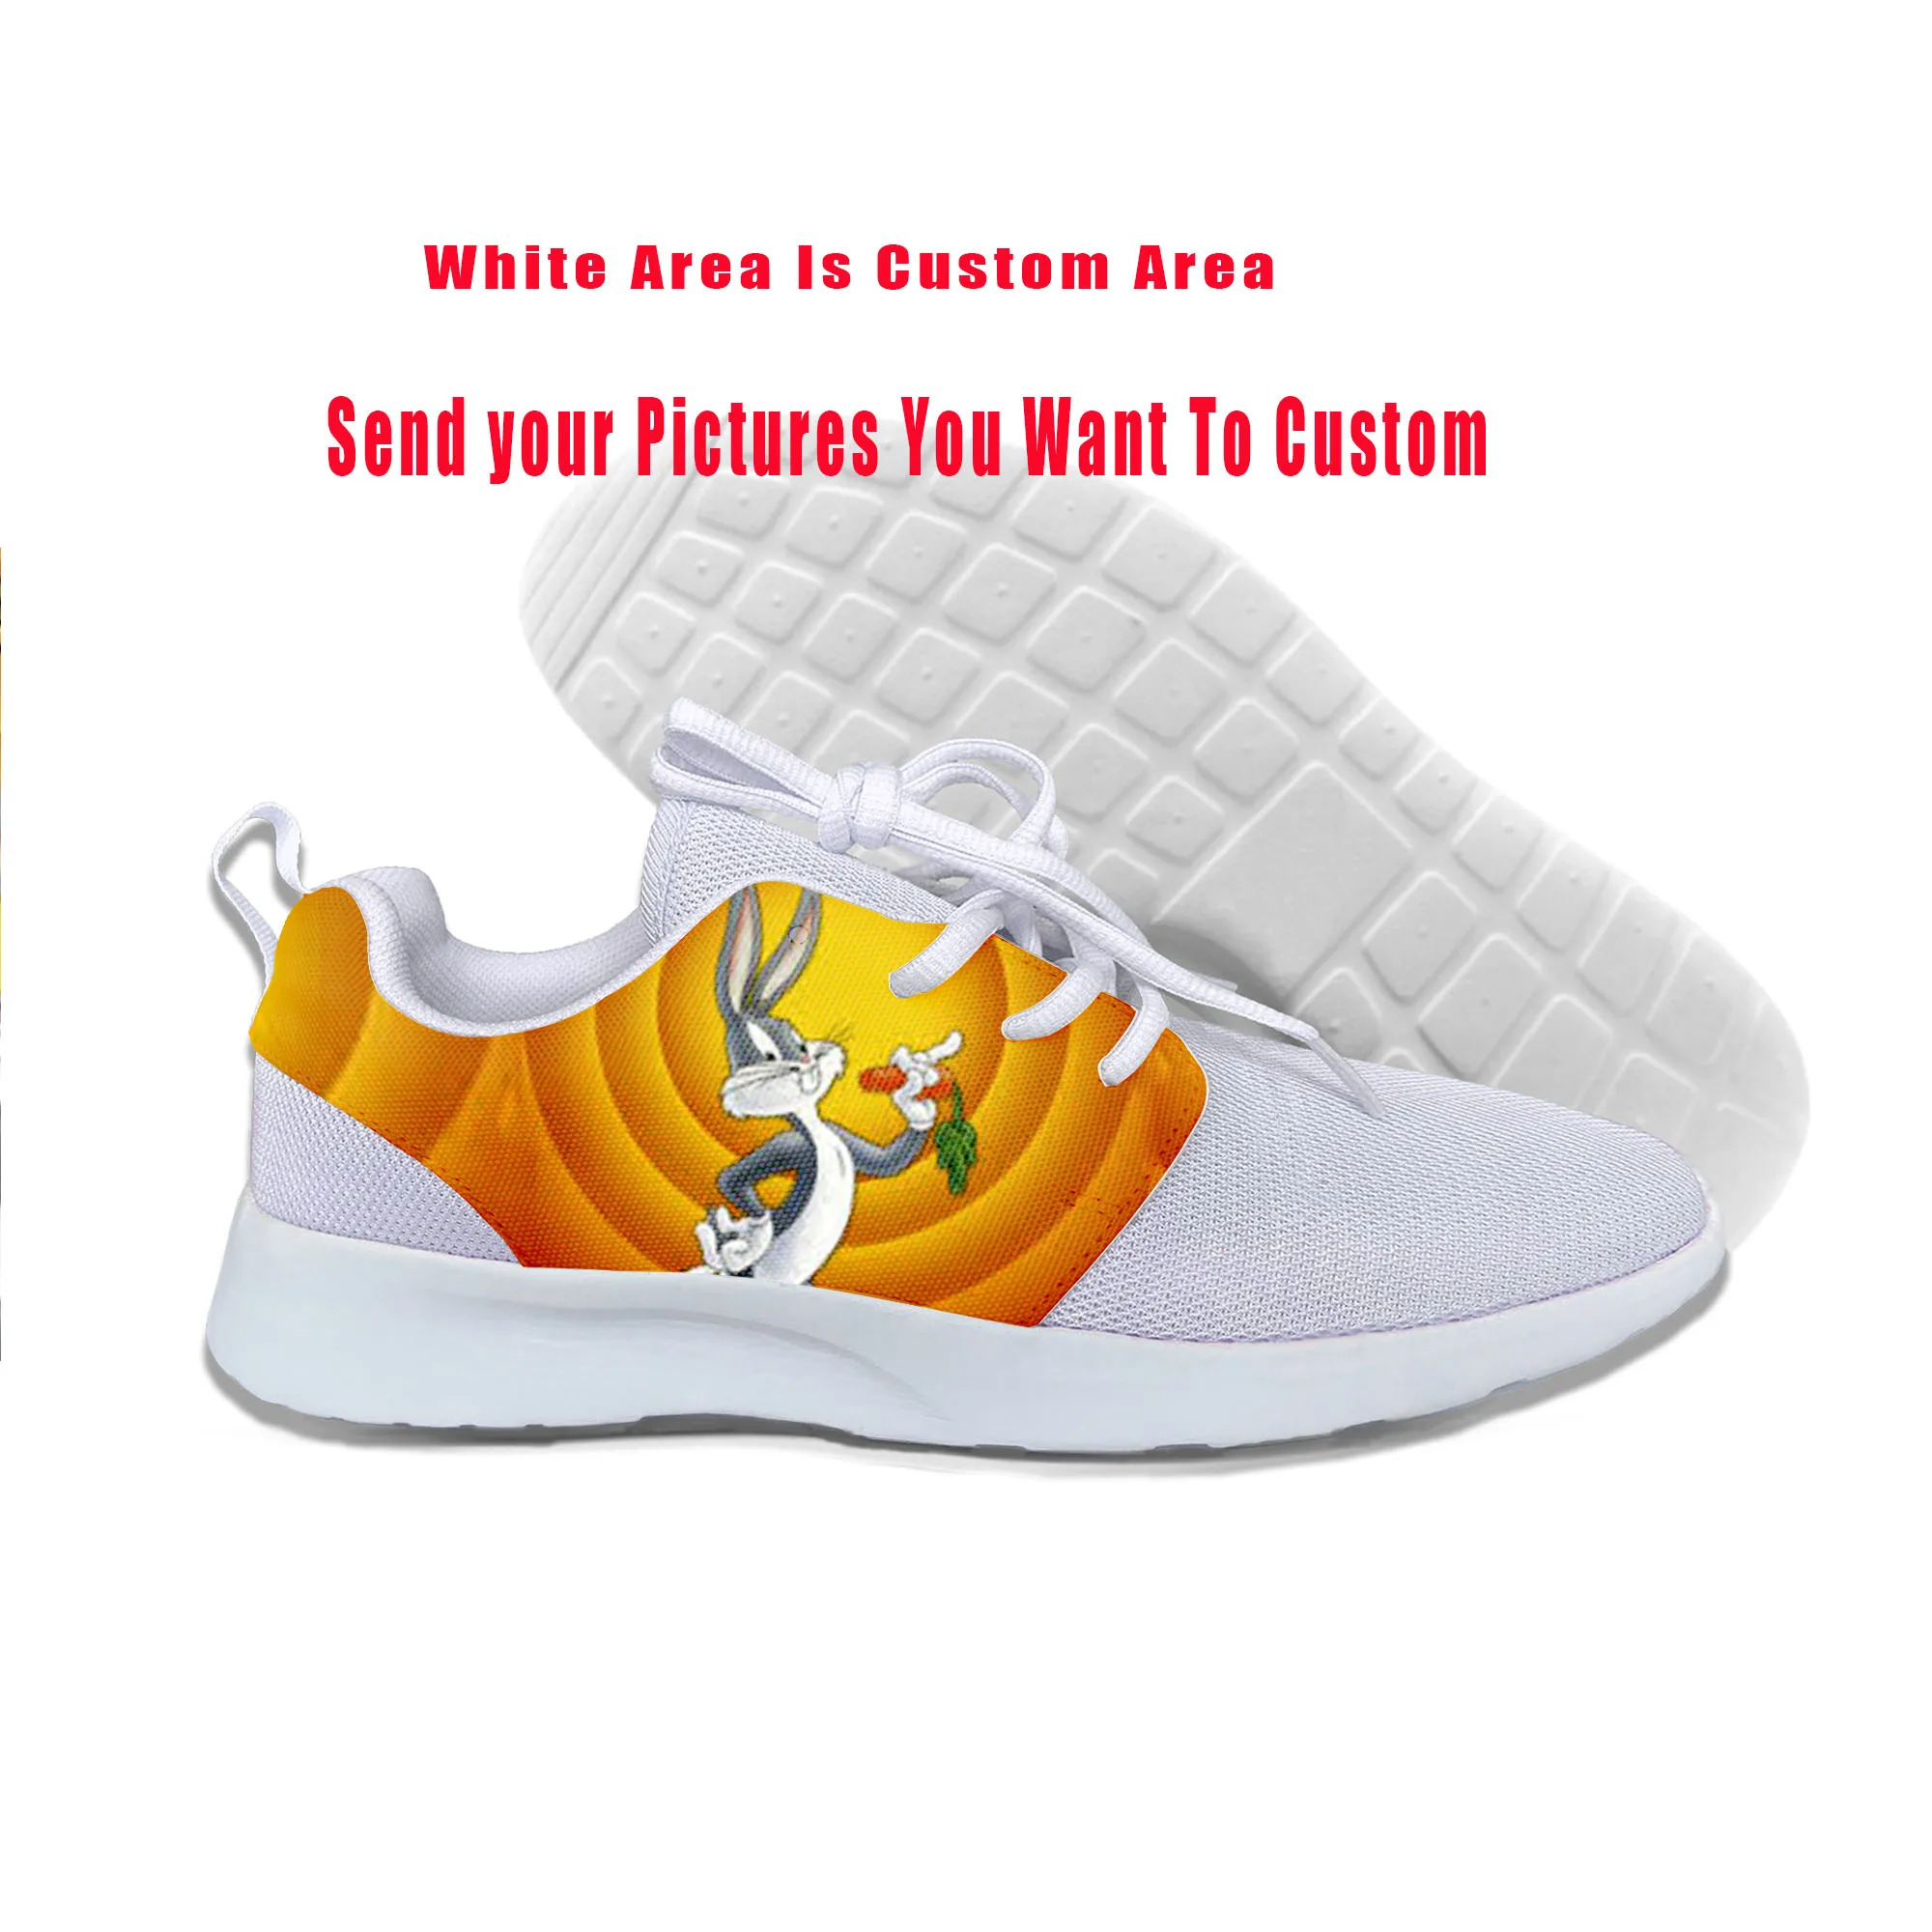 Zapatillas de deporte con estampado 3D para hombre y mujer, zapatos casuales a la moda, con dibujos animados, con diseño de Bugs Bunny, 2019